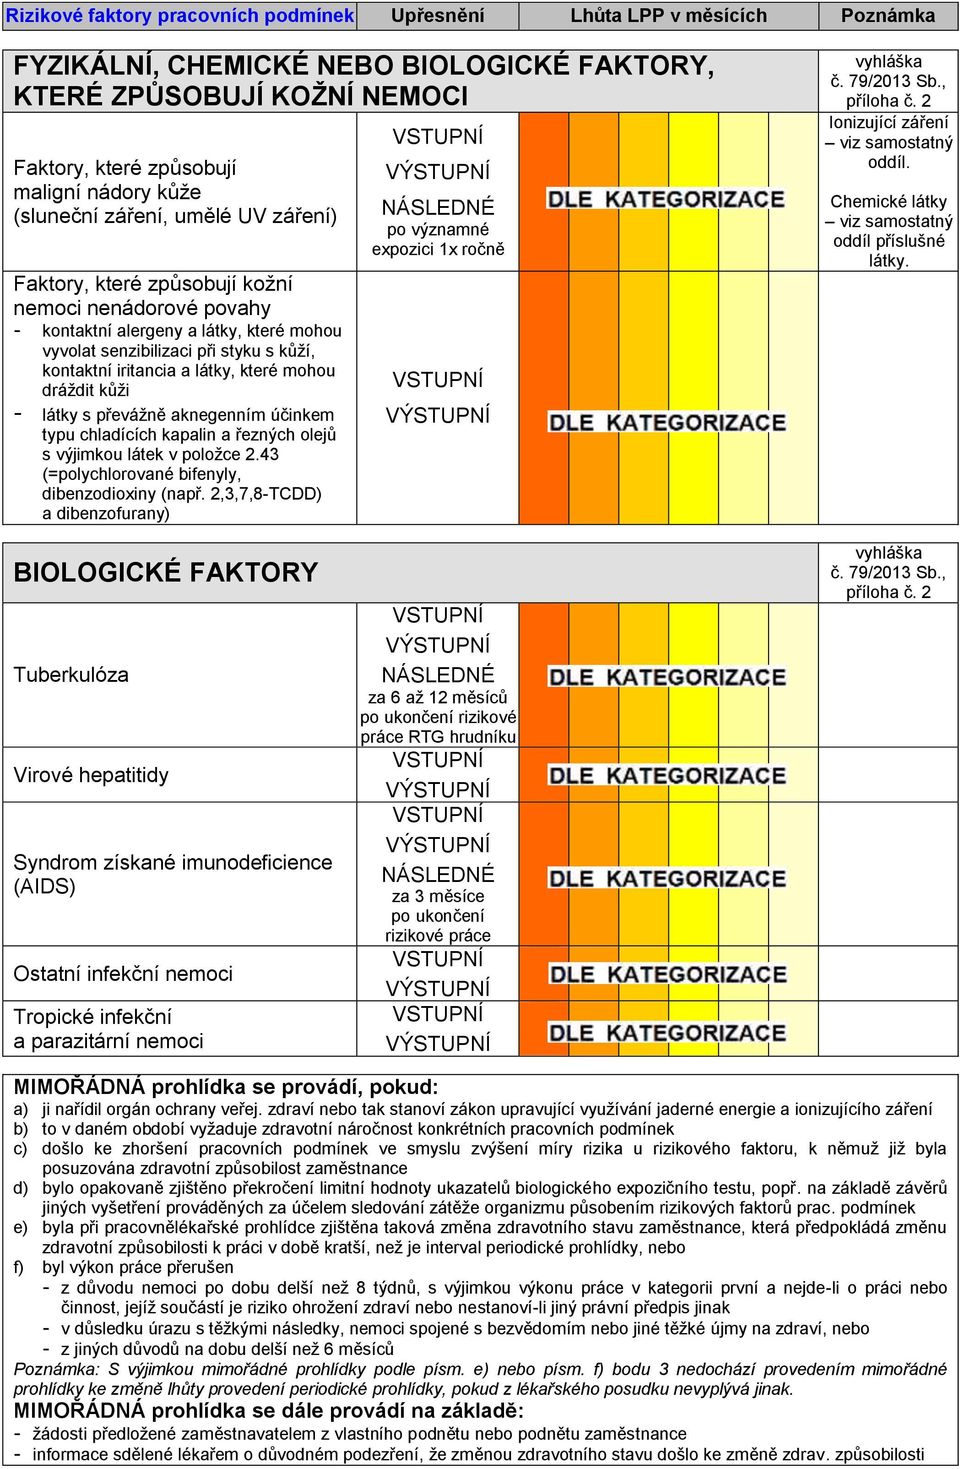 chladících kapalin a řezných olejů s výjimkou látek v položce 2.43 (=polychlorované bifenyly, dibenzodioxiny (např. 2,3,7,8-TCDD) a dibenzofurany) po významné expozici 1x ročně č.